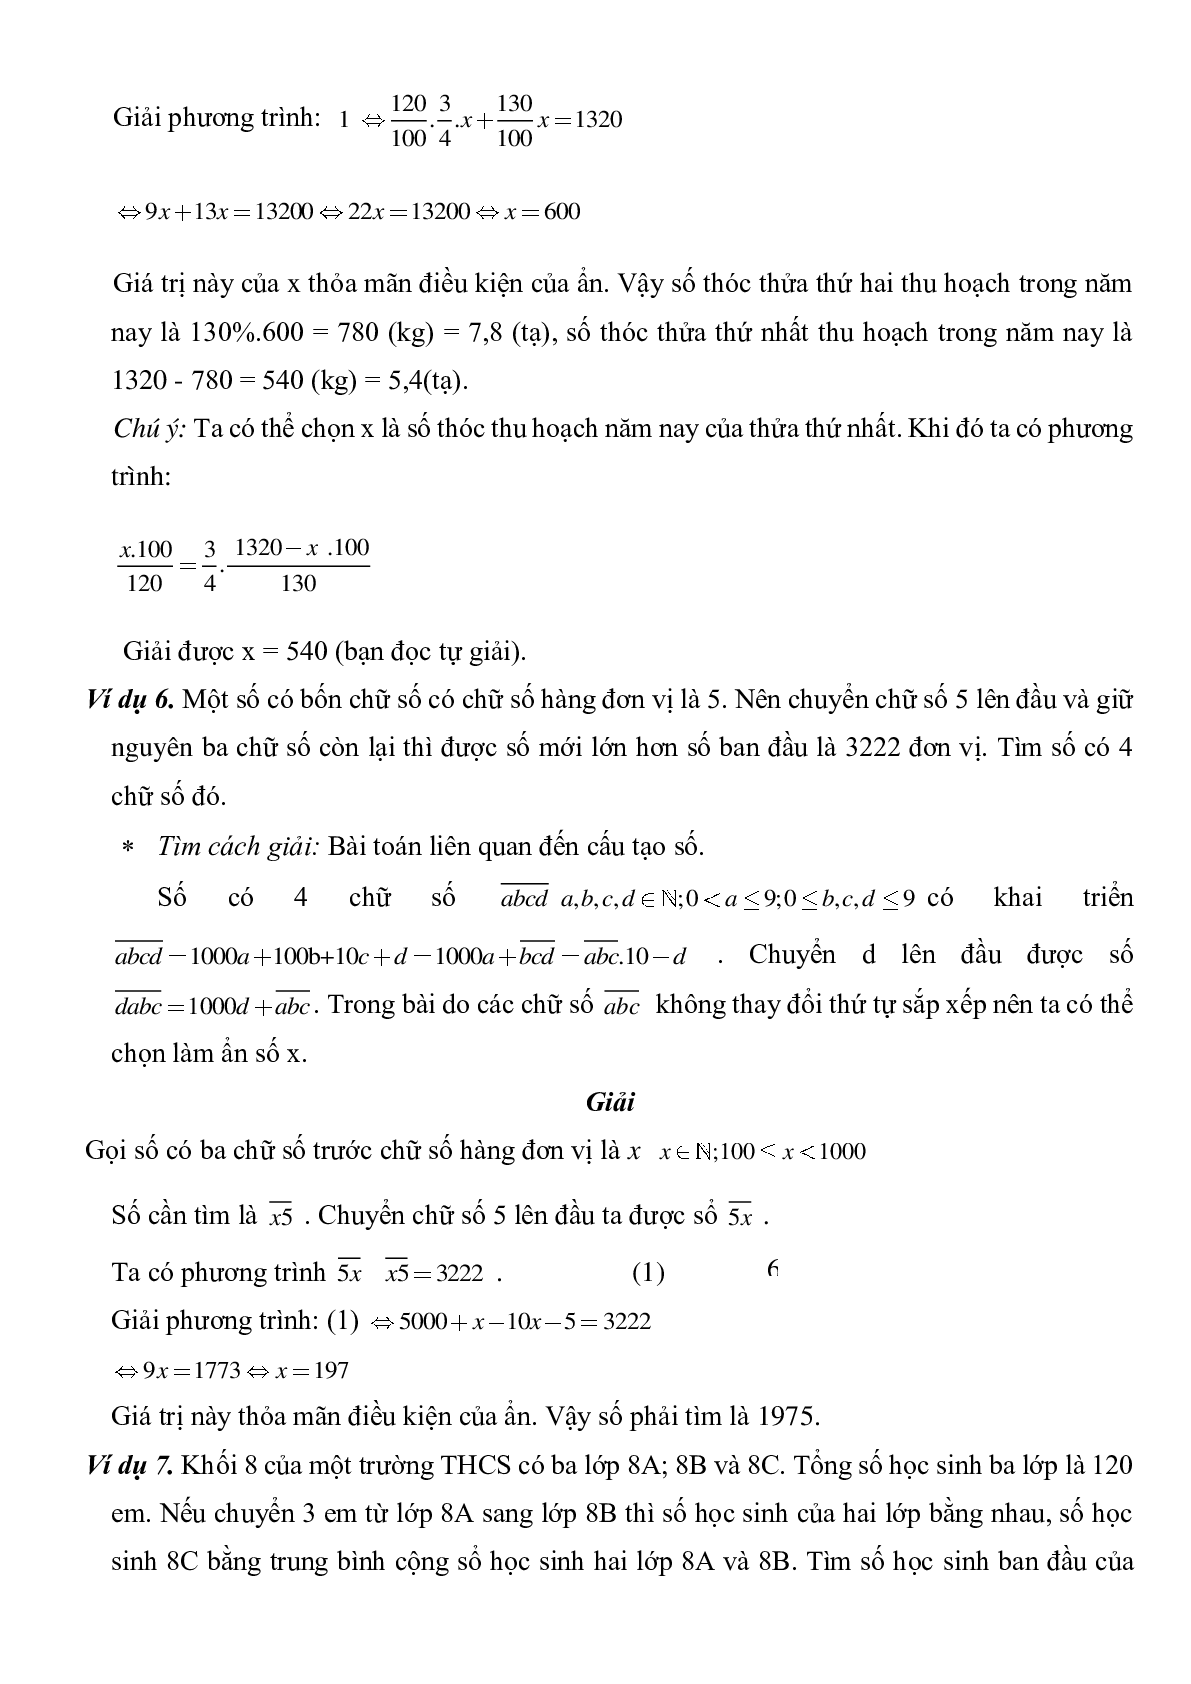 Giải toán bằng cách lập phương trình (trang 6)